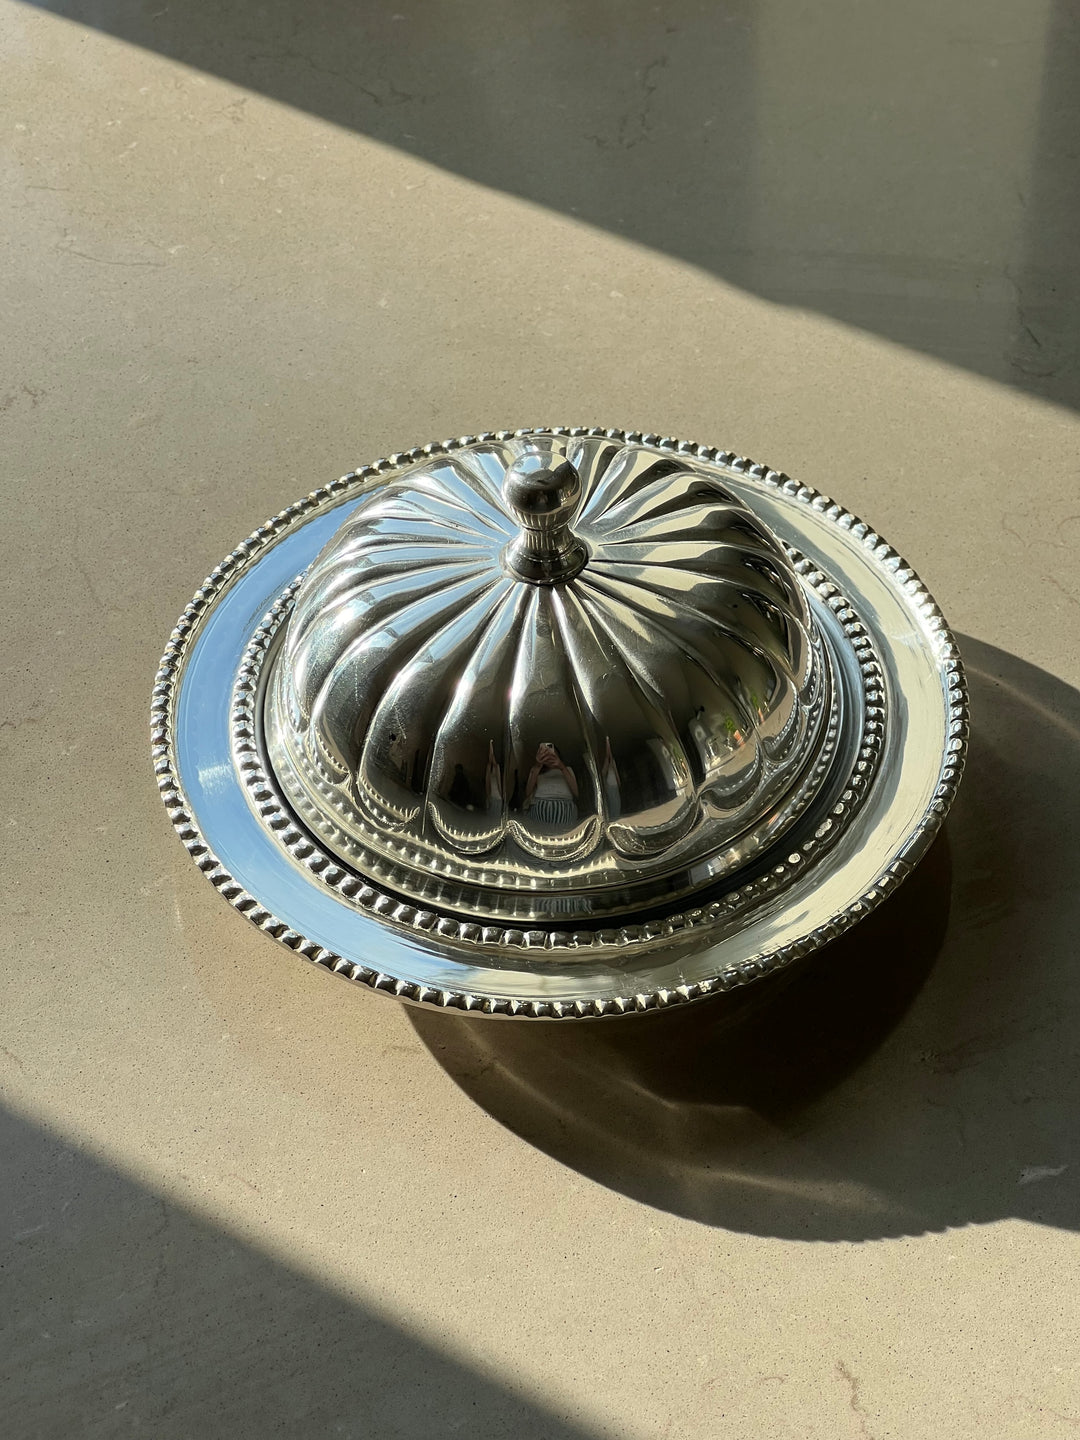 Antik-inspireret Smørskål med låg i sølvbelagt stål Studio Hafnia